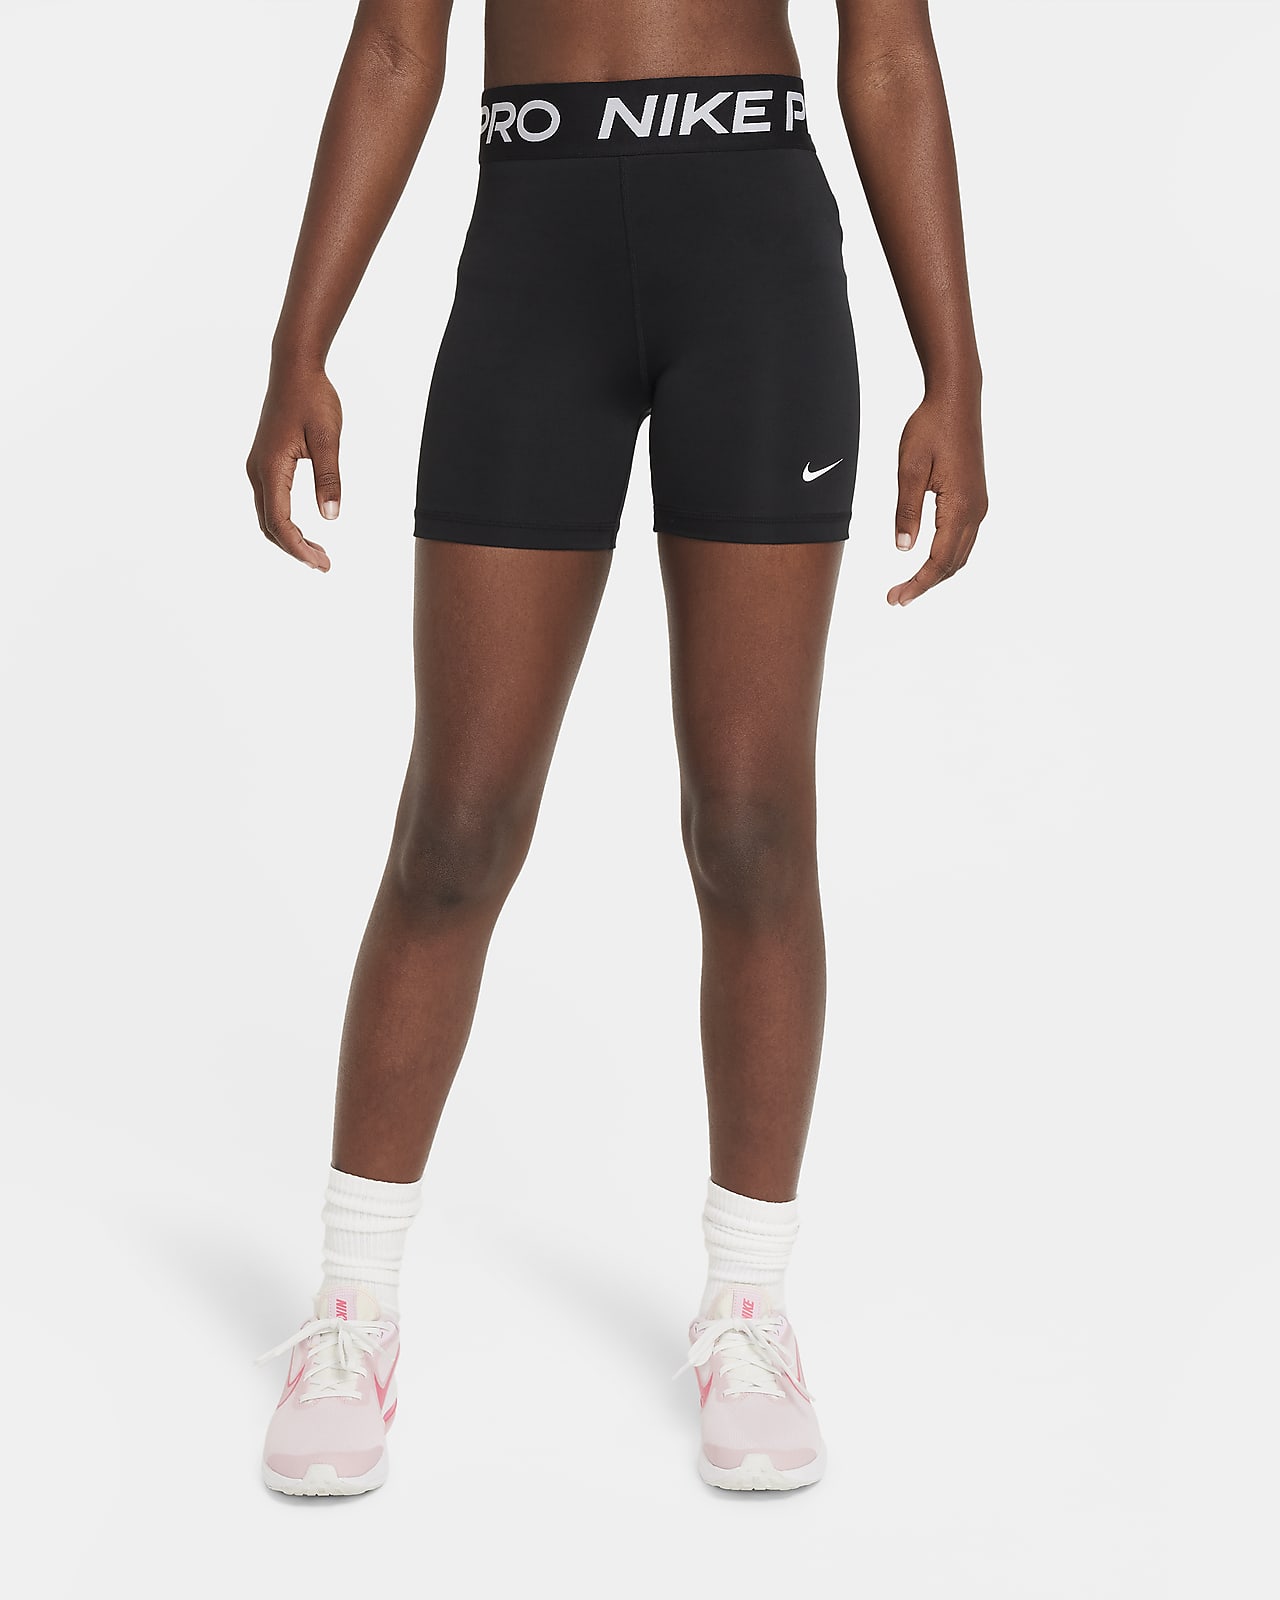 Shorts para niña talla grande Nike Pro